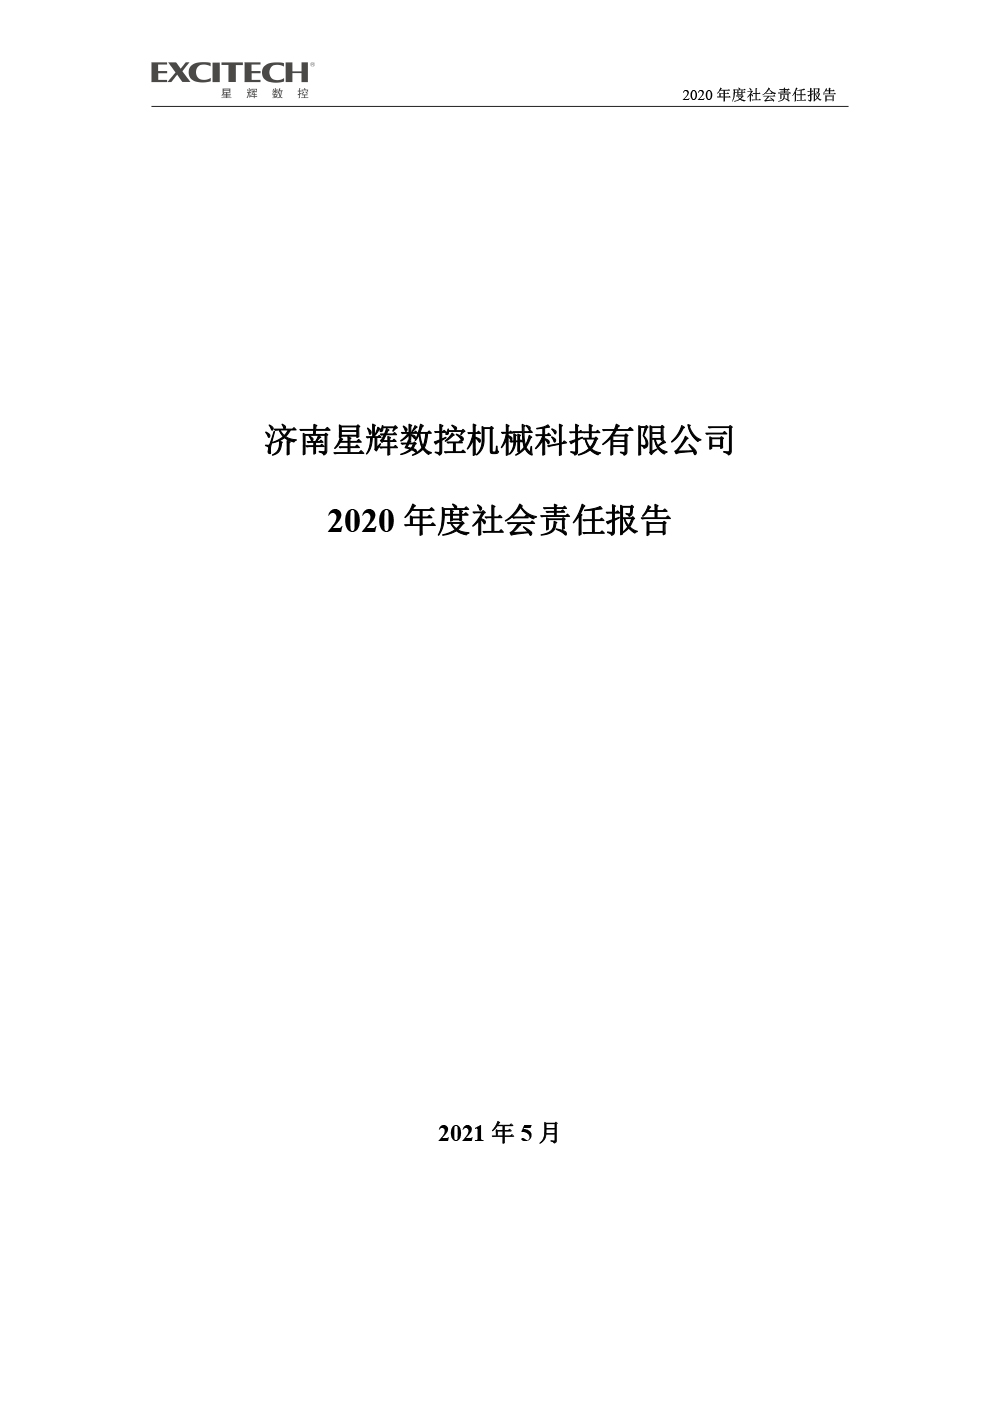 2020年企业社会责任报告-1.jpg